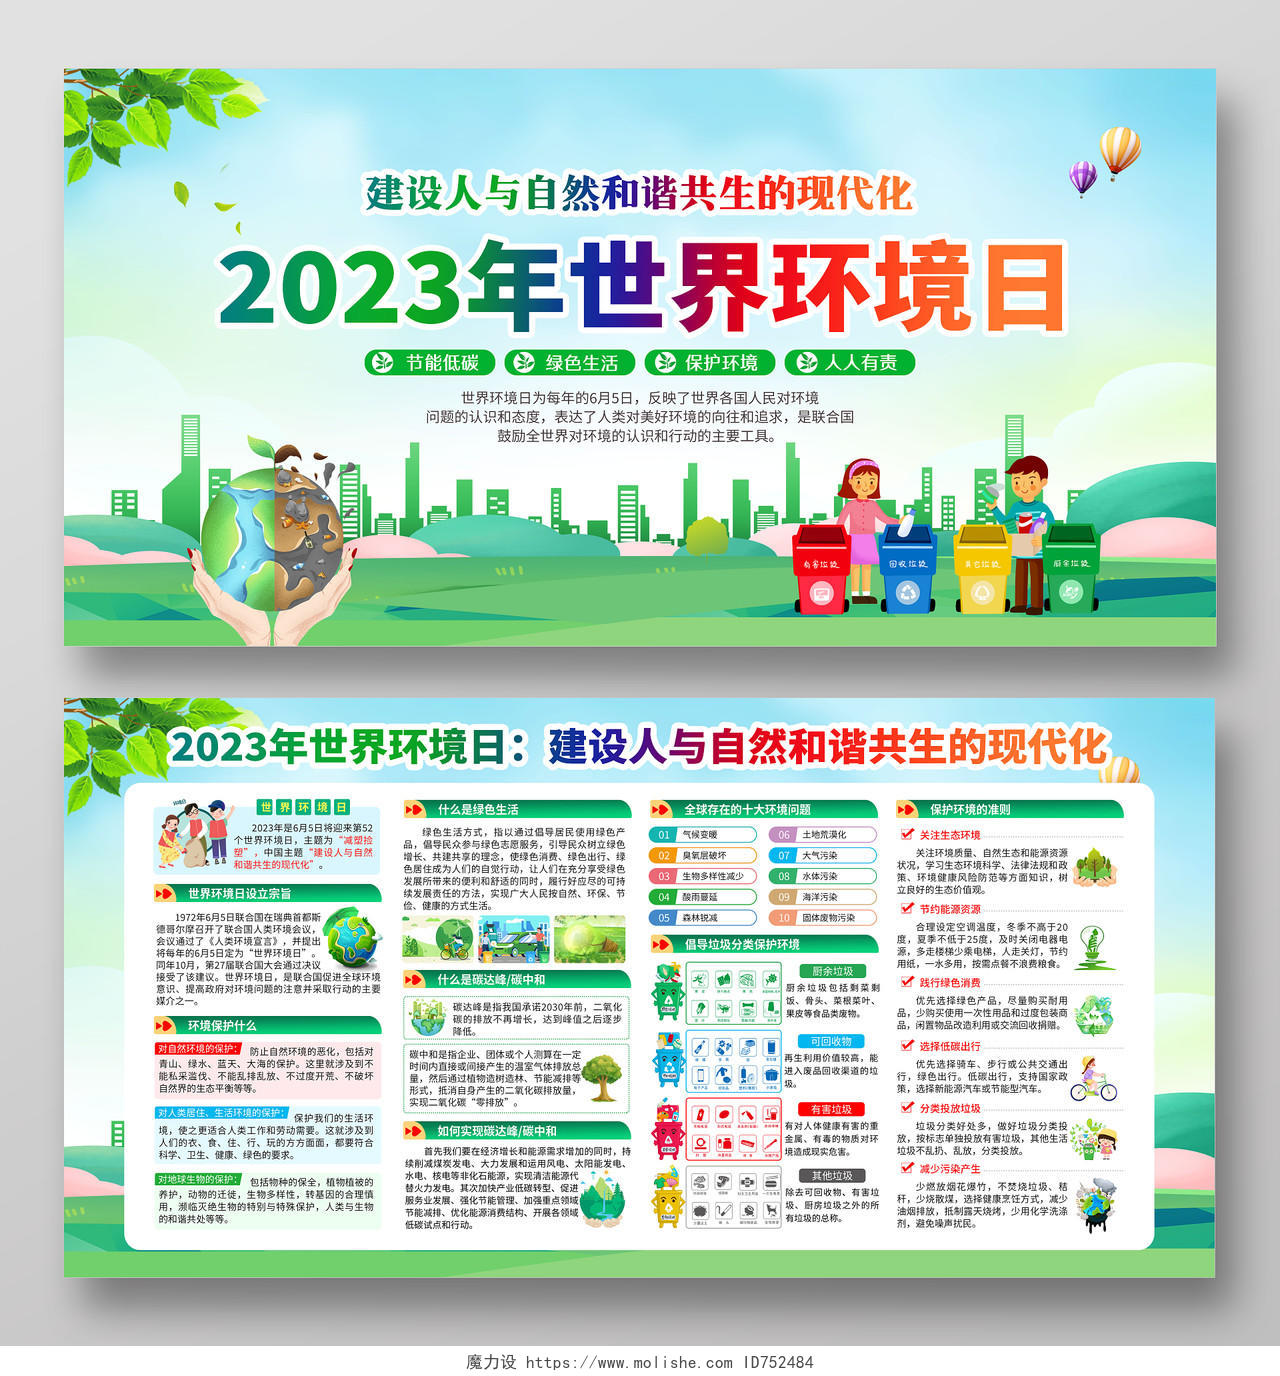 蓝色清新风格2023世界环境日宣传栏